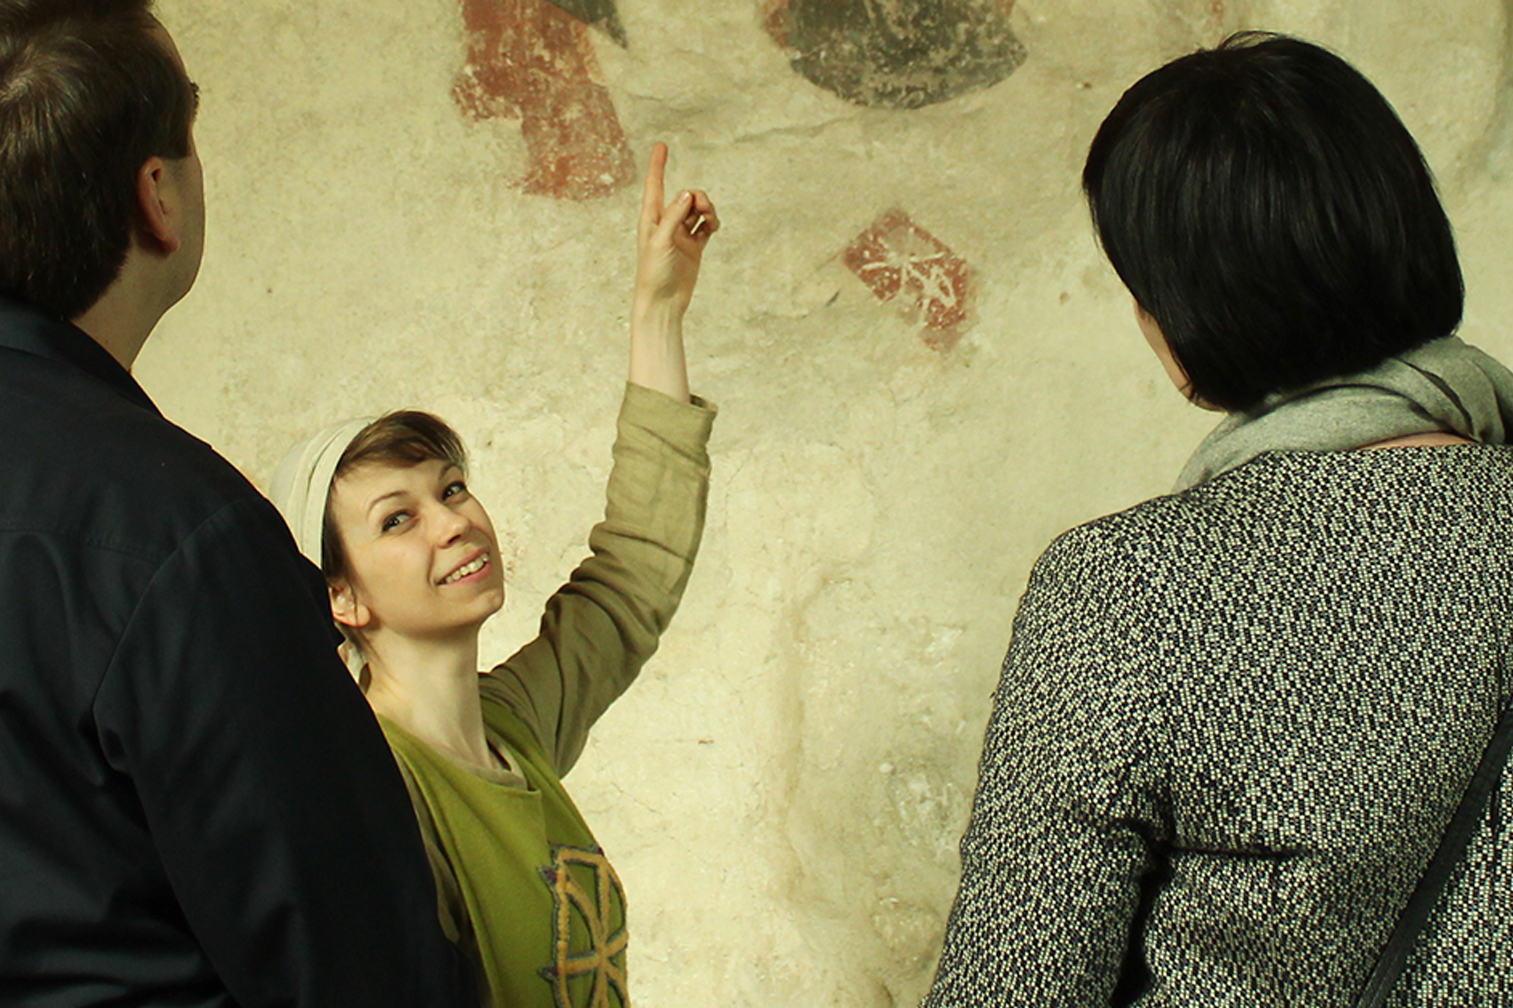 Iloinen keskiaikapukuun pukeutunut nainen osoittaa kirkon seinää